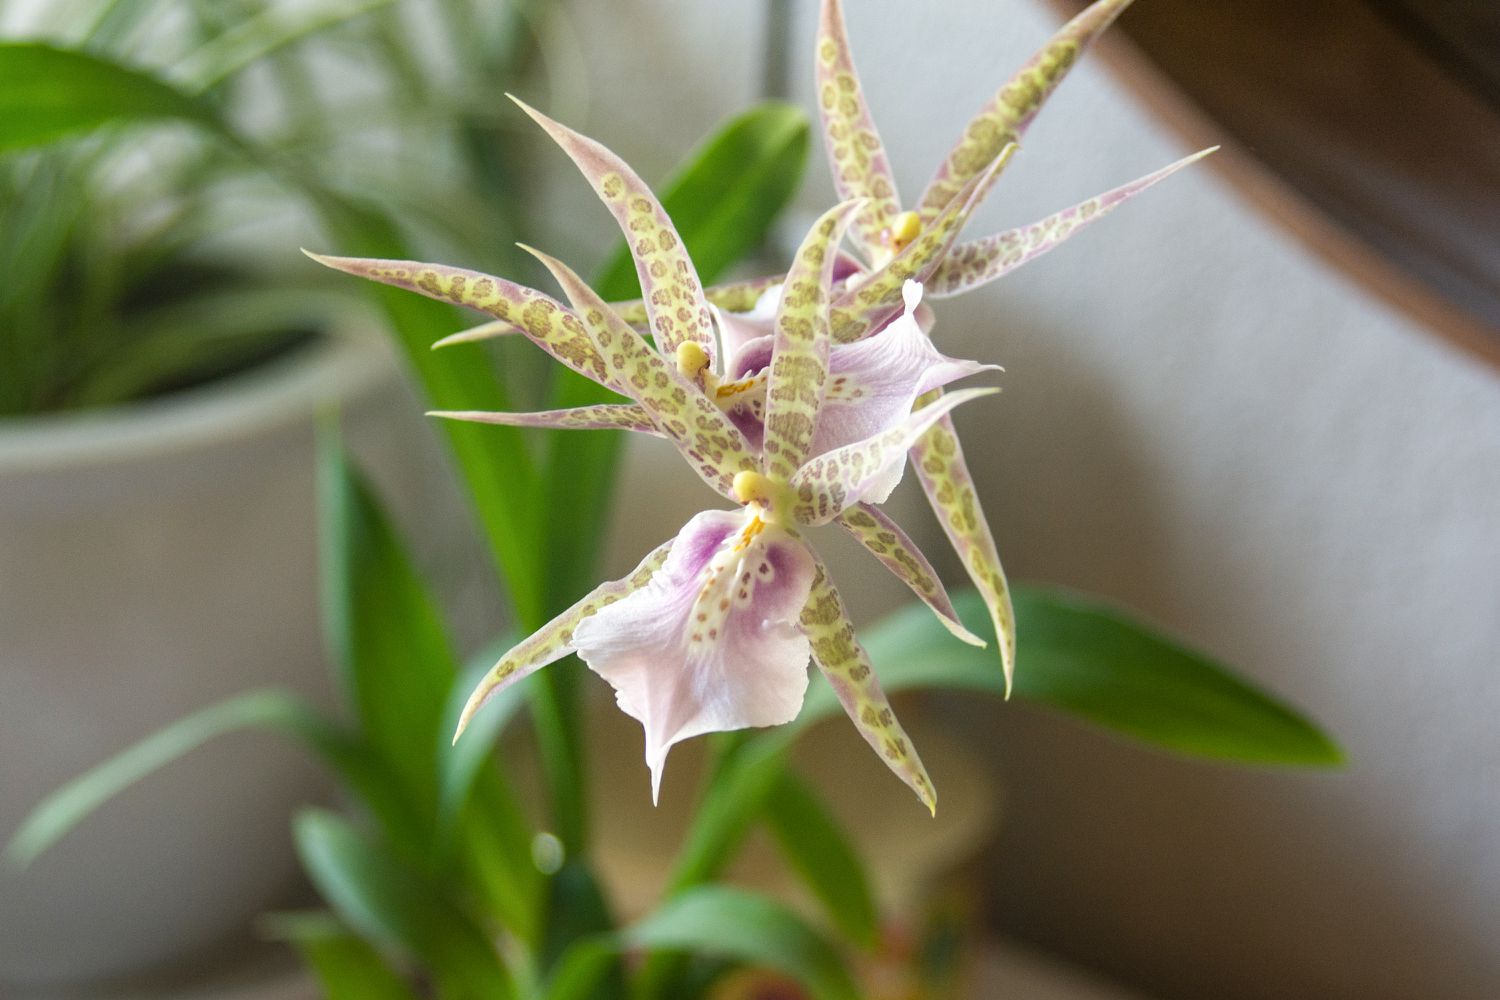 Brassia-Orchidee mit lang gefleckten Kelchblättern in Großaufnahme